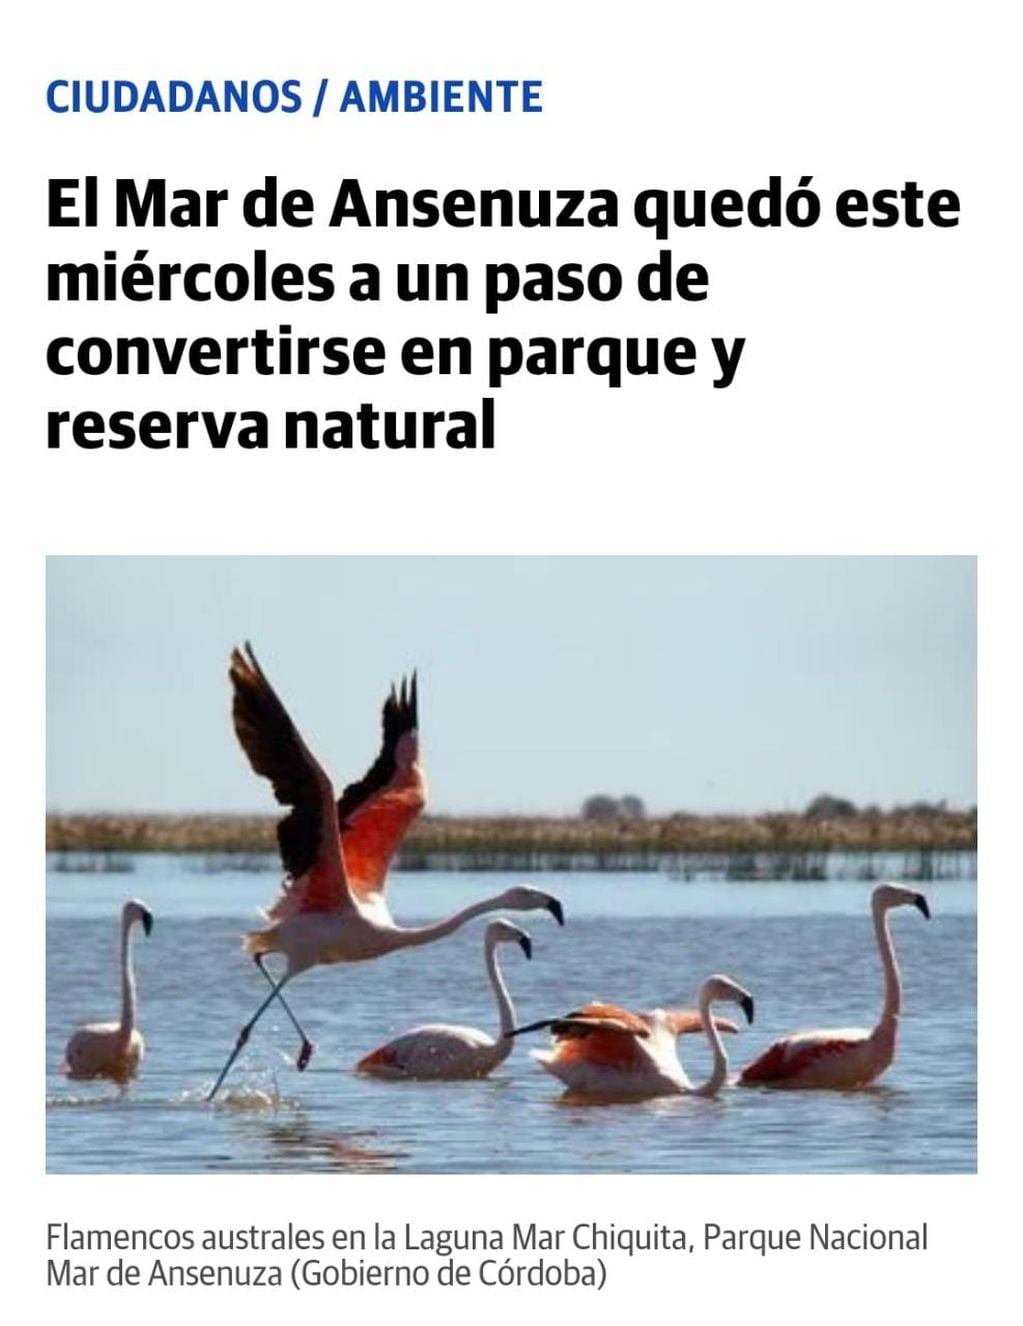 "El Mar de Ansenuza quedó este miércoles a un paso de convertirse en parque y reserva natural". La Voz del Interior